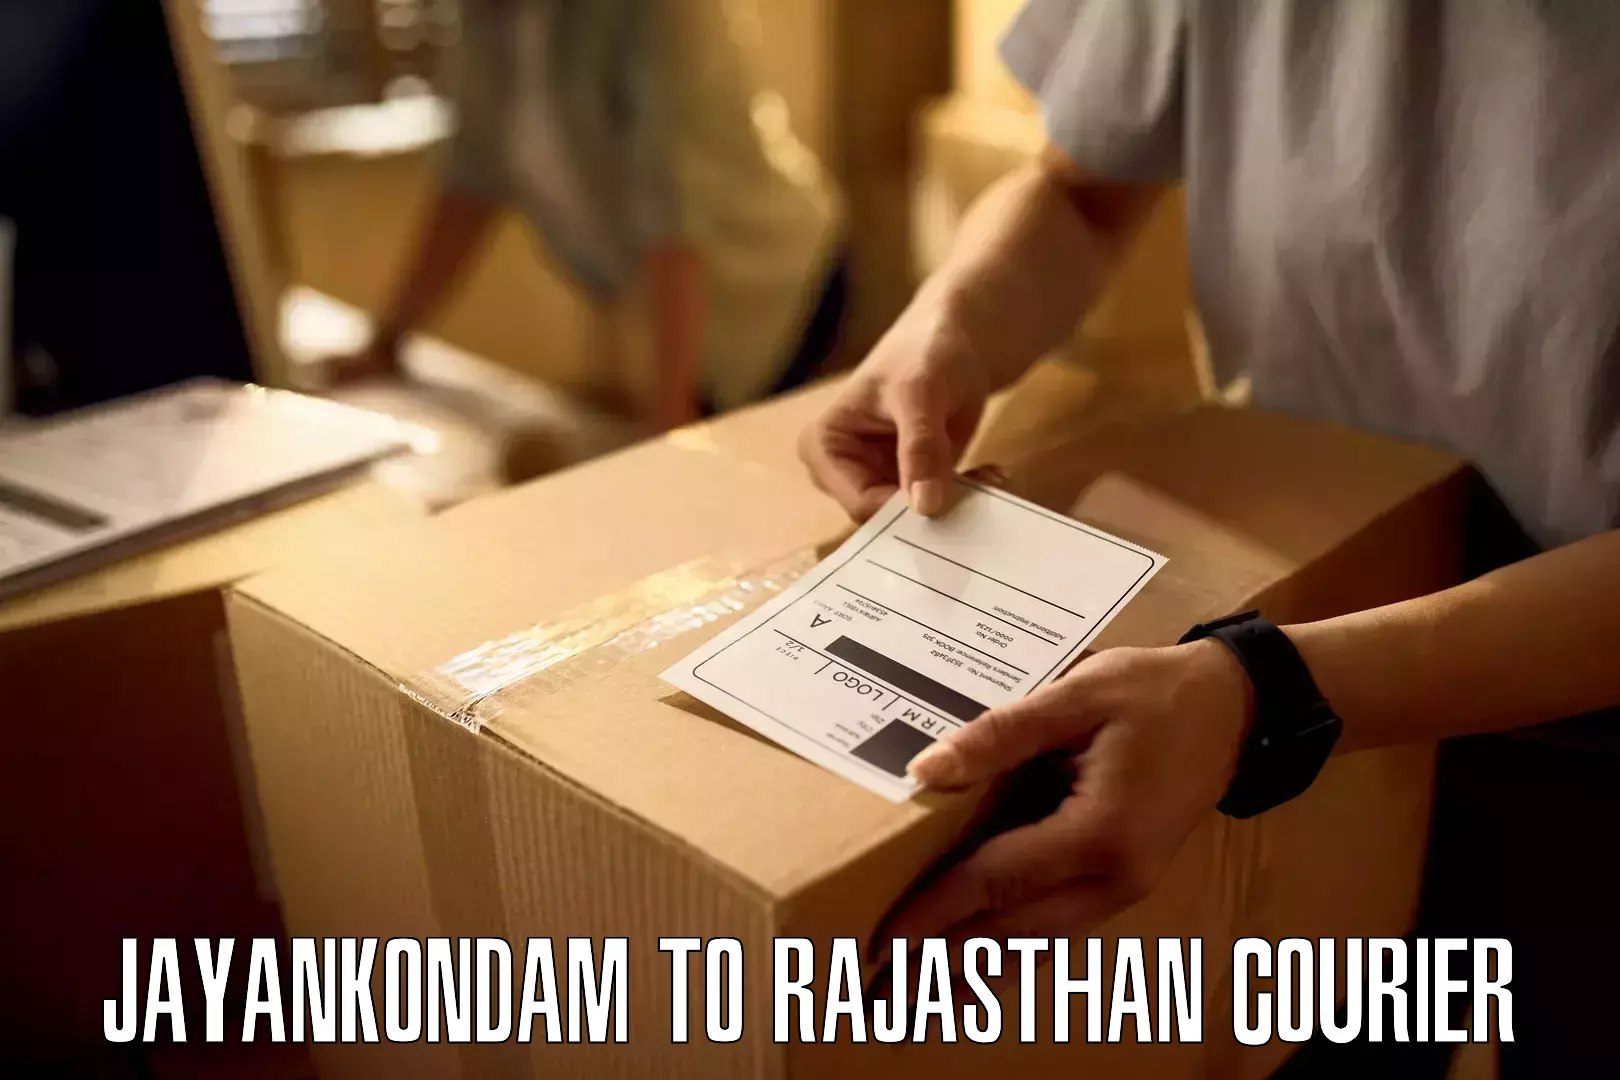 Tracking updates Jayankondam to Buhana